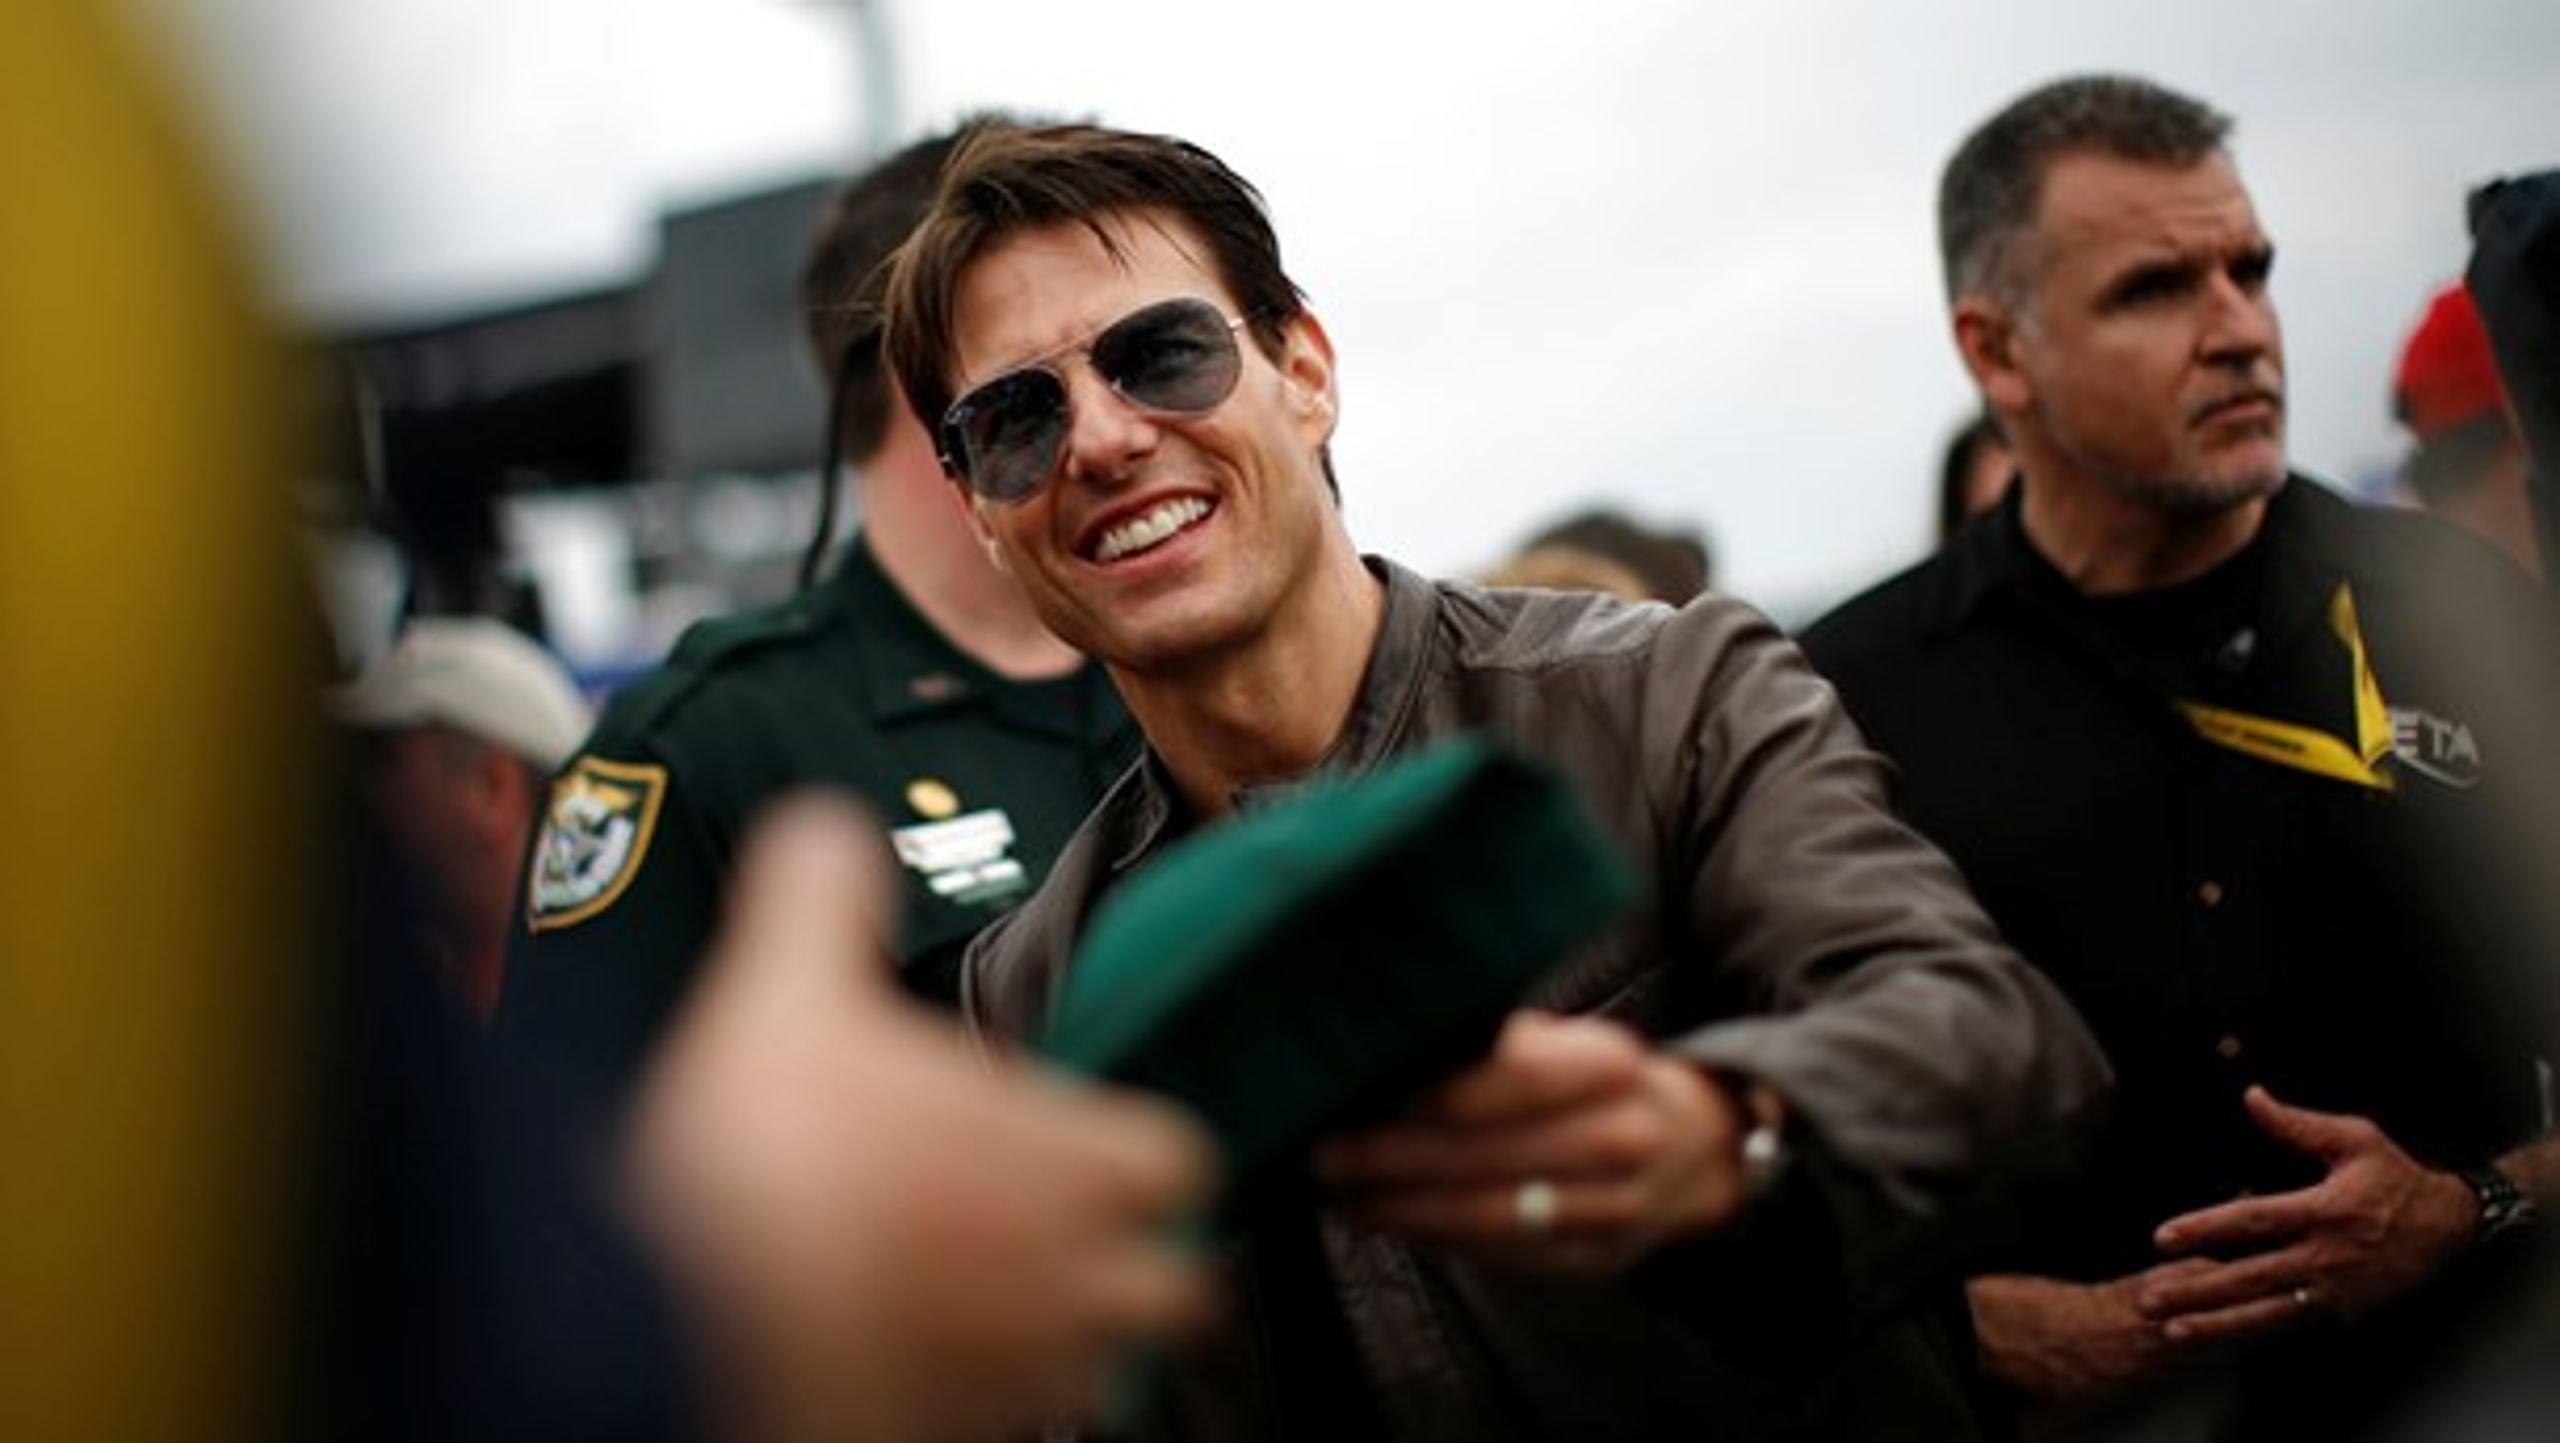 Stjerneskuespilleren Tom Cruise bærer en Ray-Ban Aviator i storfilmen Top Gun. Når annoncer på Facebook lokker med lignende solbriller til kun 150 kroner, er der sandsynligvis tale om svindel.